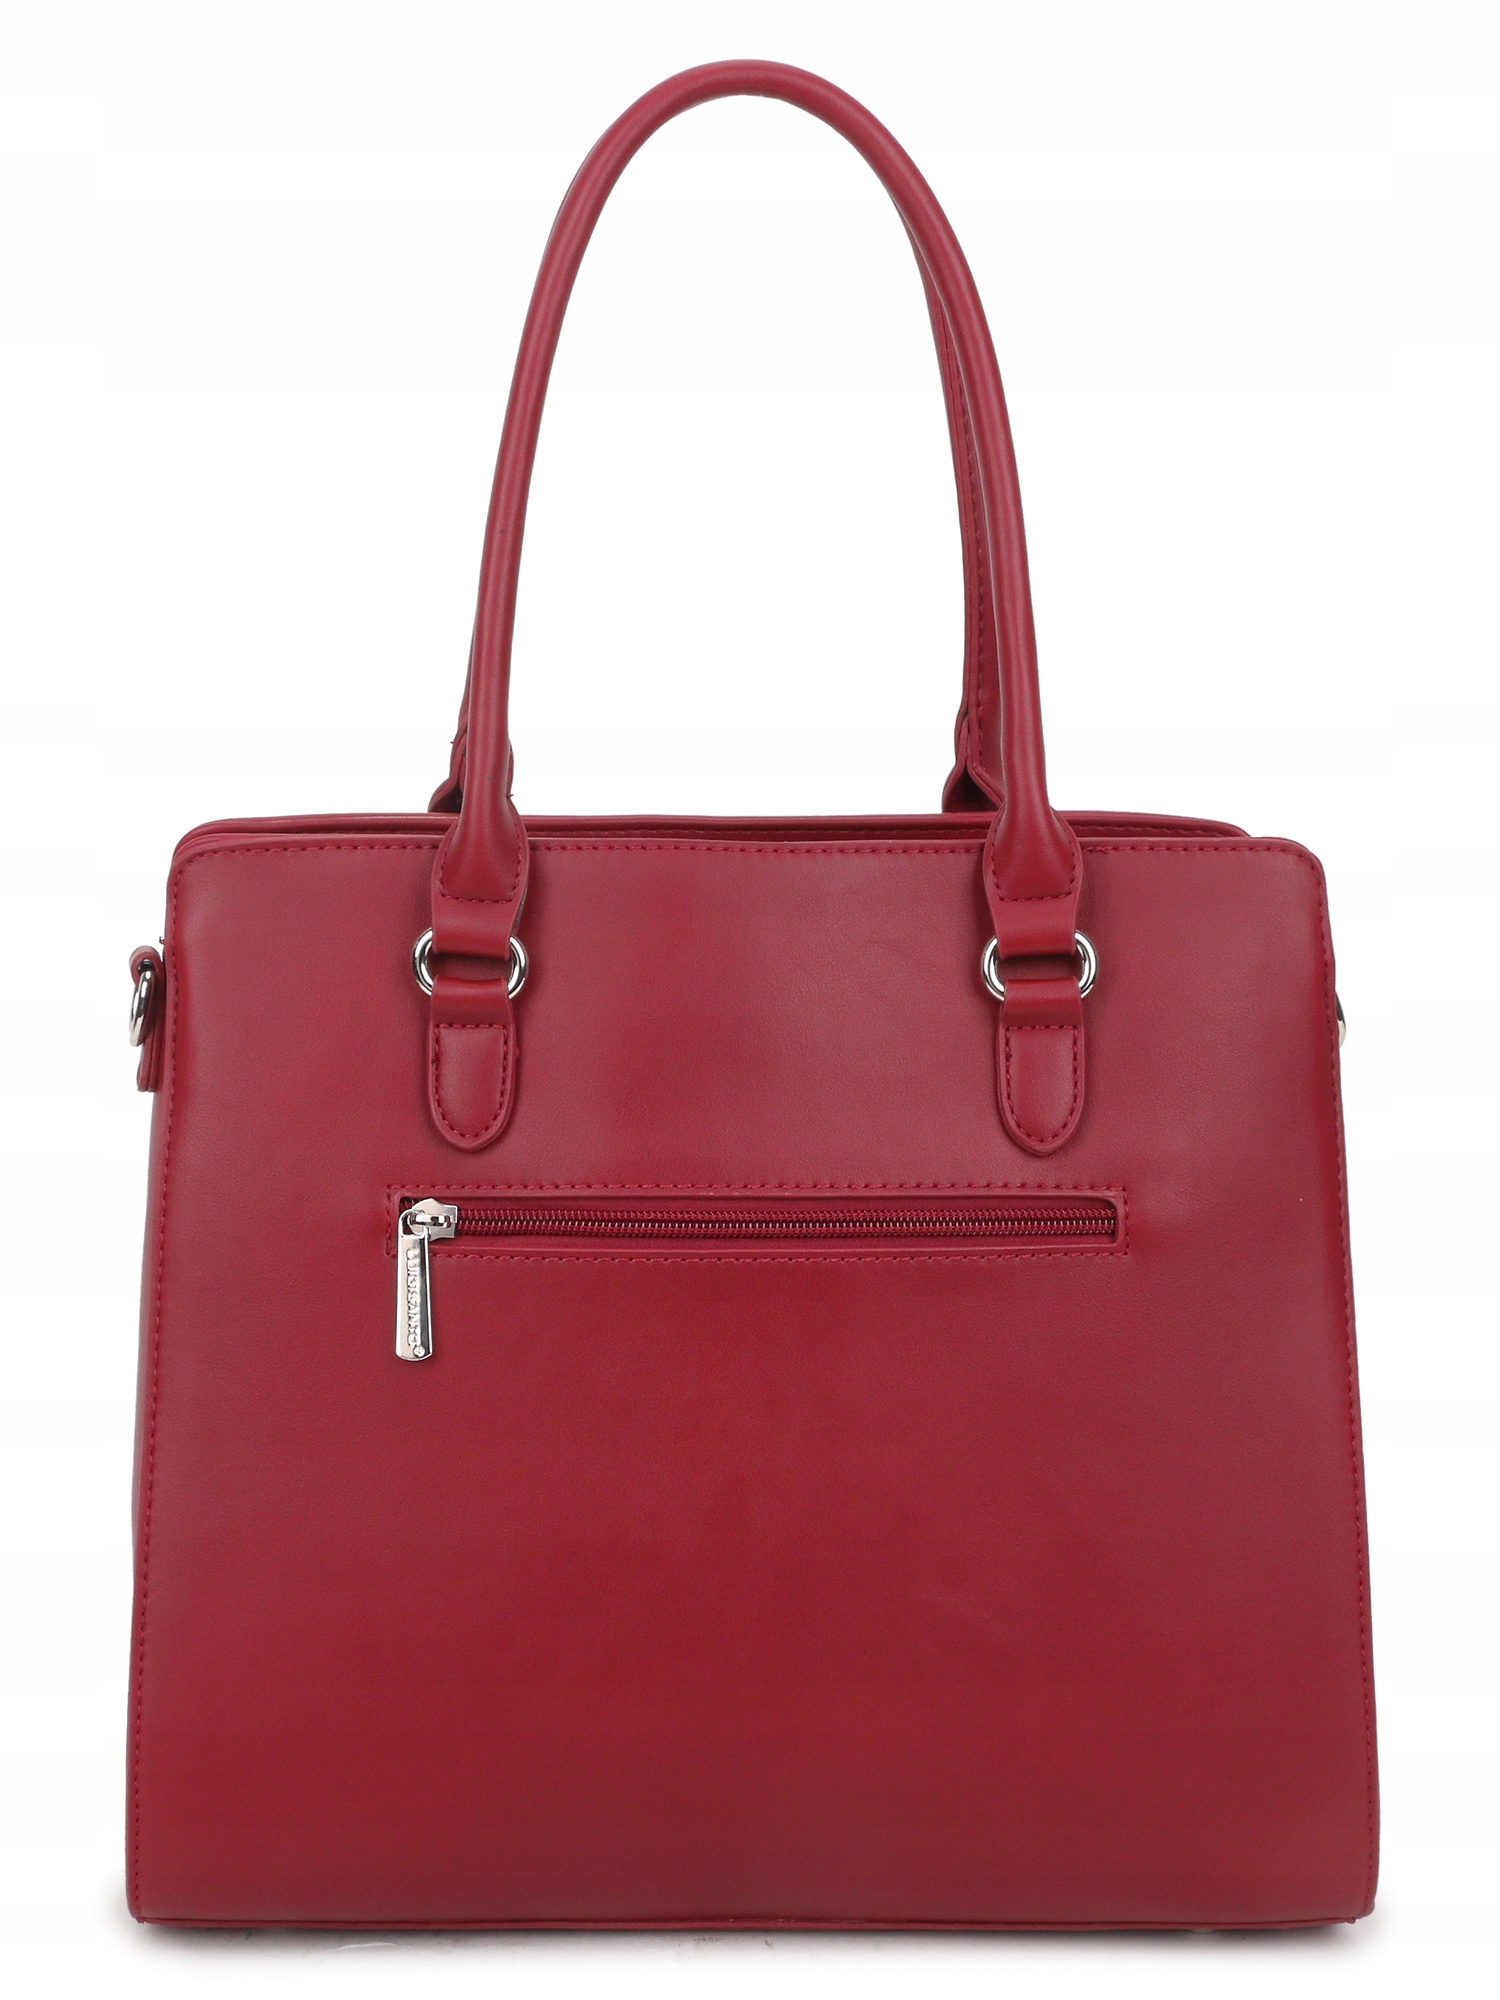 Женская бордовая сумка LUIGISANTO вместительная сумка Mark Luigisanto